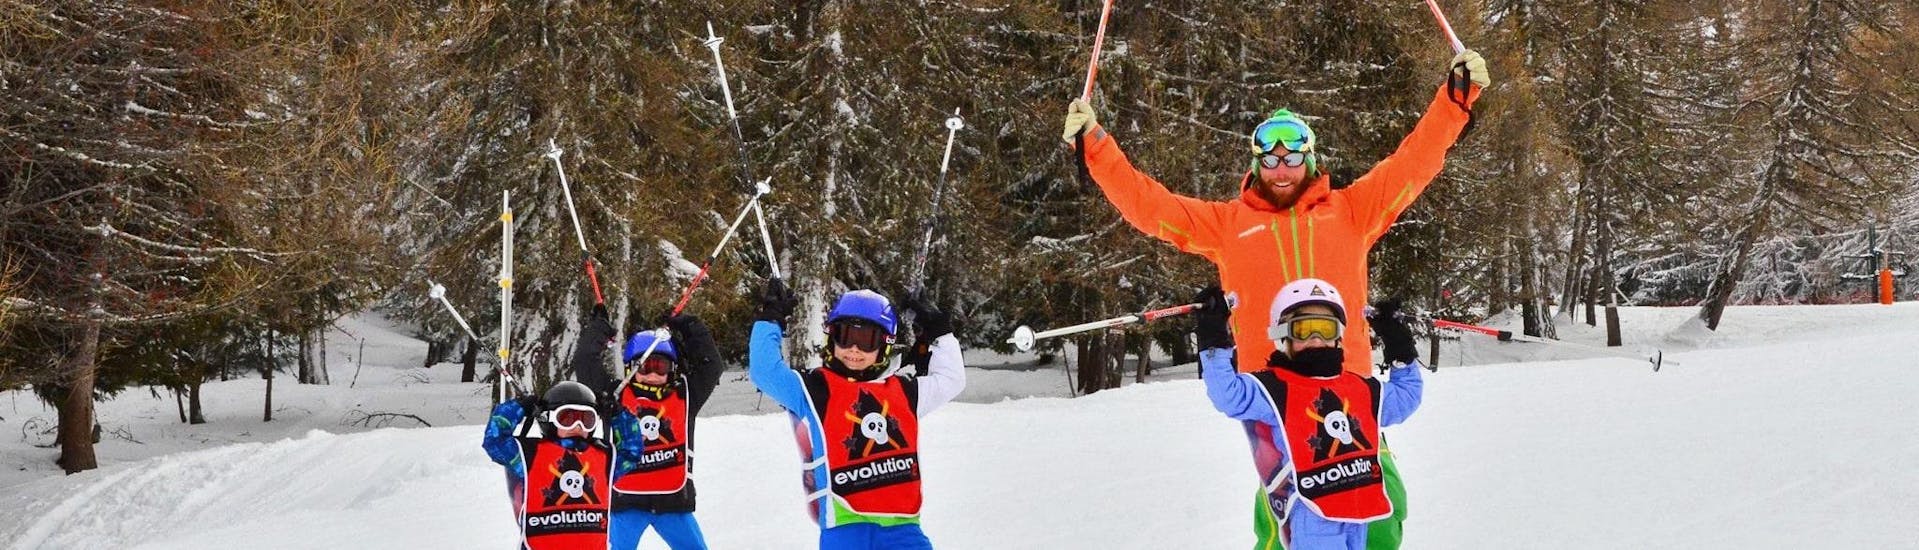 Les enfants s'amusent beaucoup pendant leur Cours de ski Enfants (6-12 ans) avec Expérience avec l'école de ski Evolution 2 La Plagne Montchavin - Les Coches.